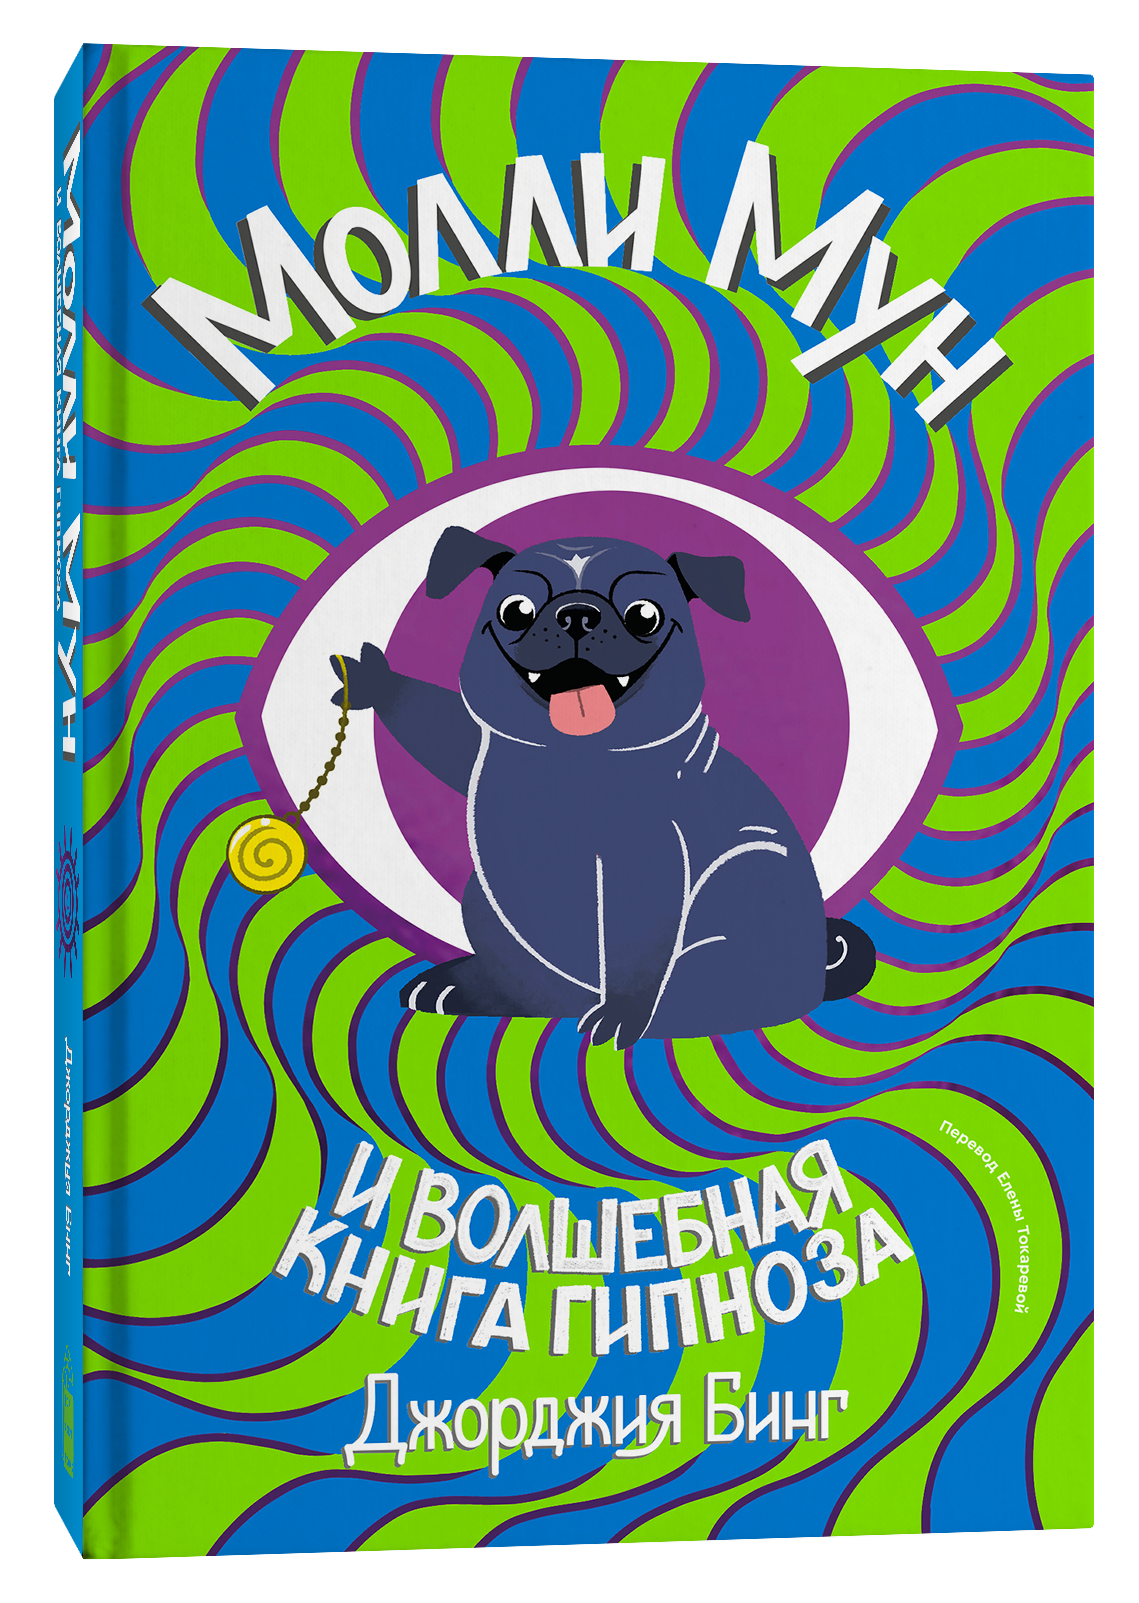 Молли мун гипноза. Джорджия бинг Молли Мун. Молли Мун и книга гипноза. Молли Мун и Волшебная книга гипноза (2015).